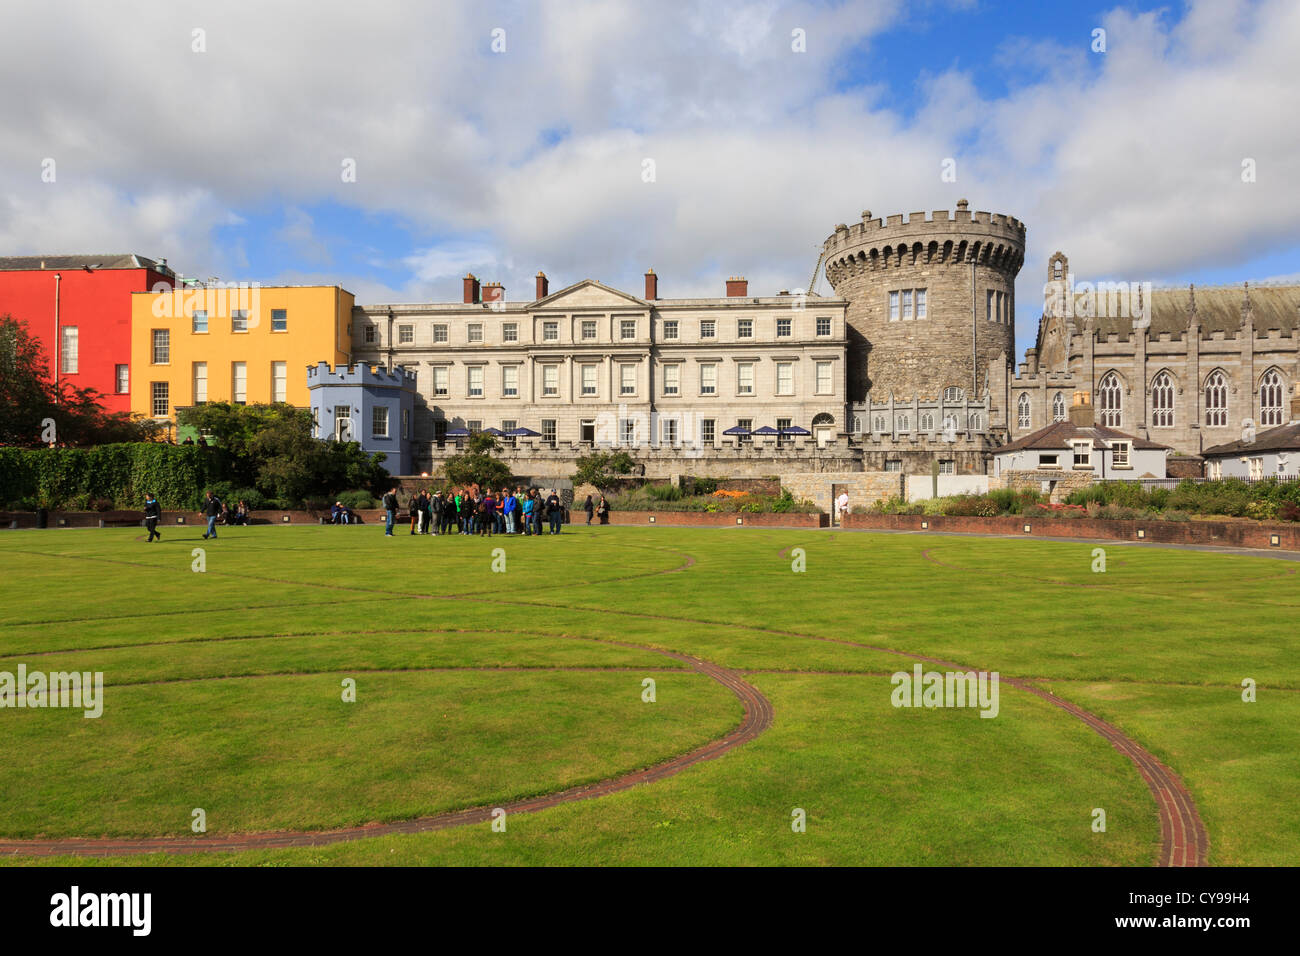 Blick auf Turm und das Dublin Castle Gärten Datensatz mit einem keltischen Design in den Rasen und Touristen besucht. Dublin, Republik Irland, Eire Stockfoto